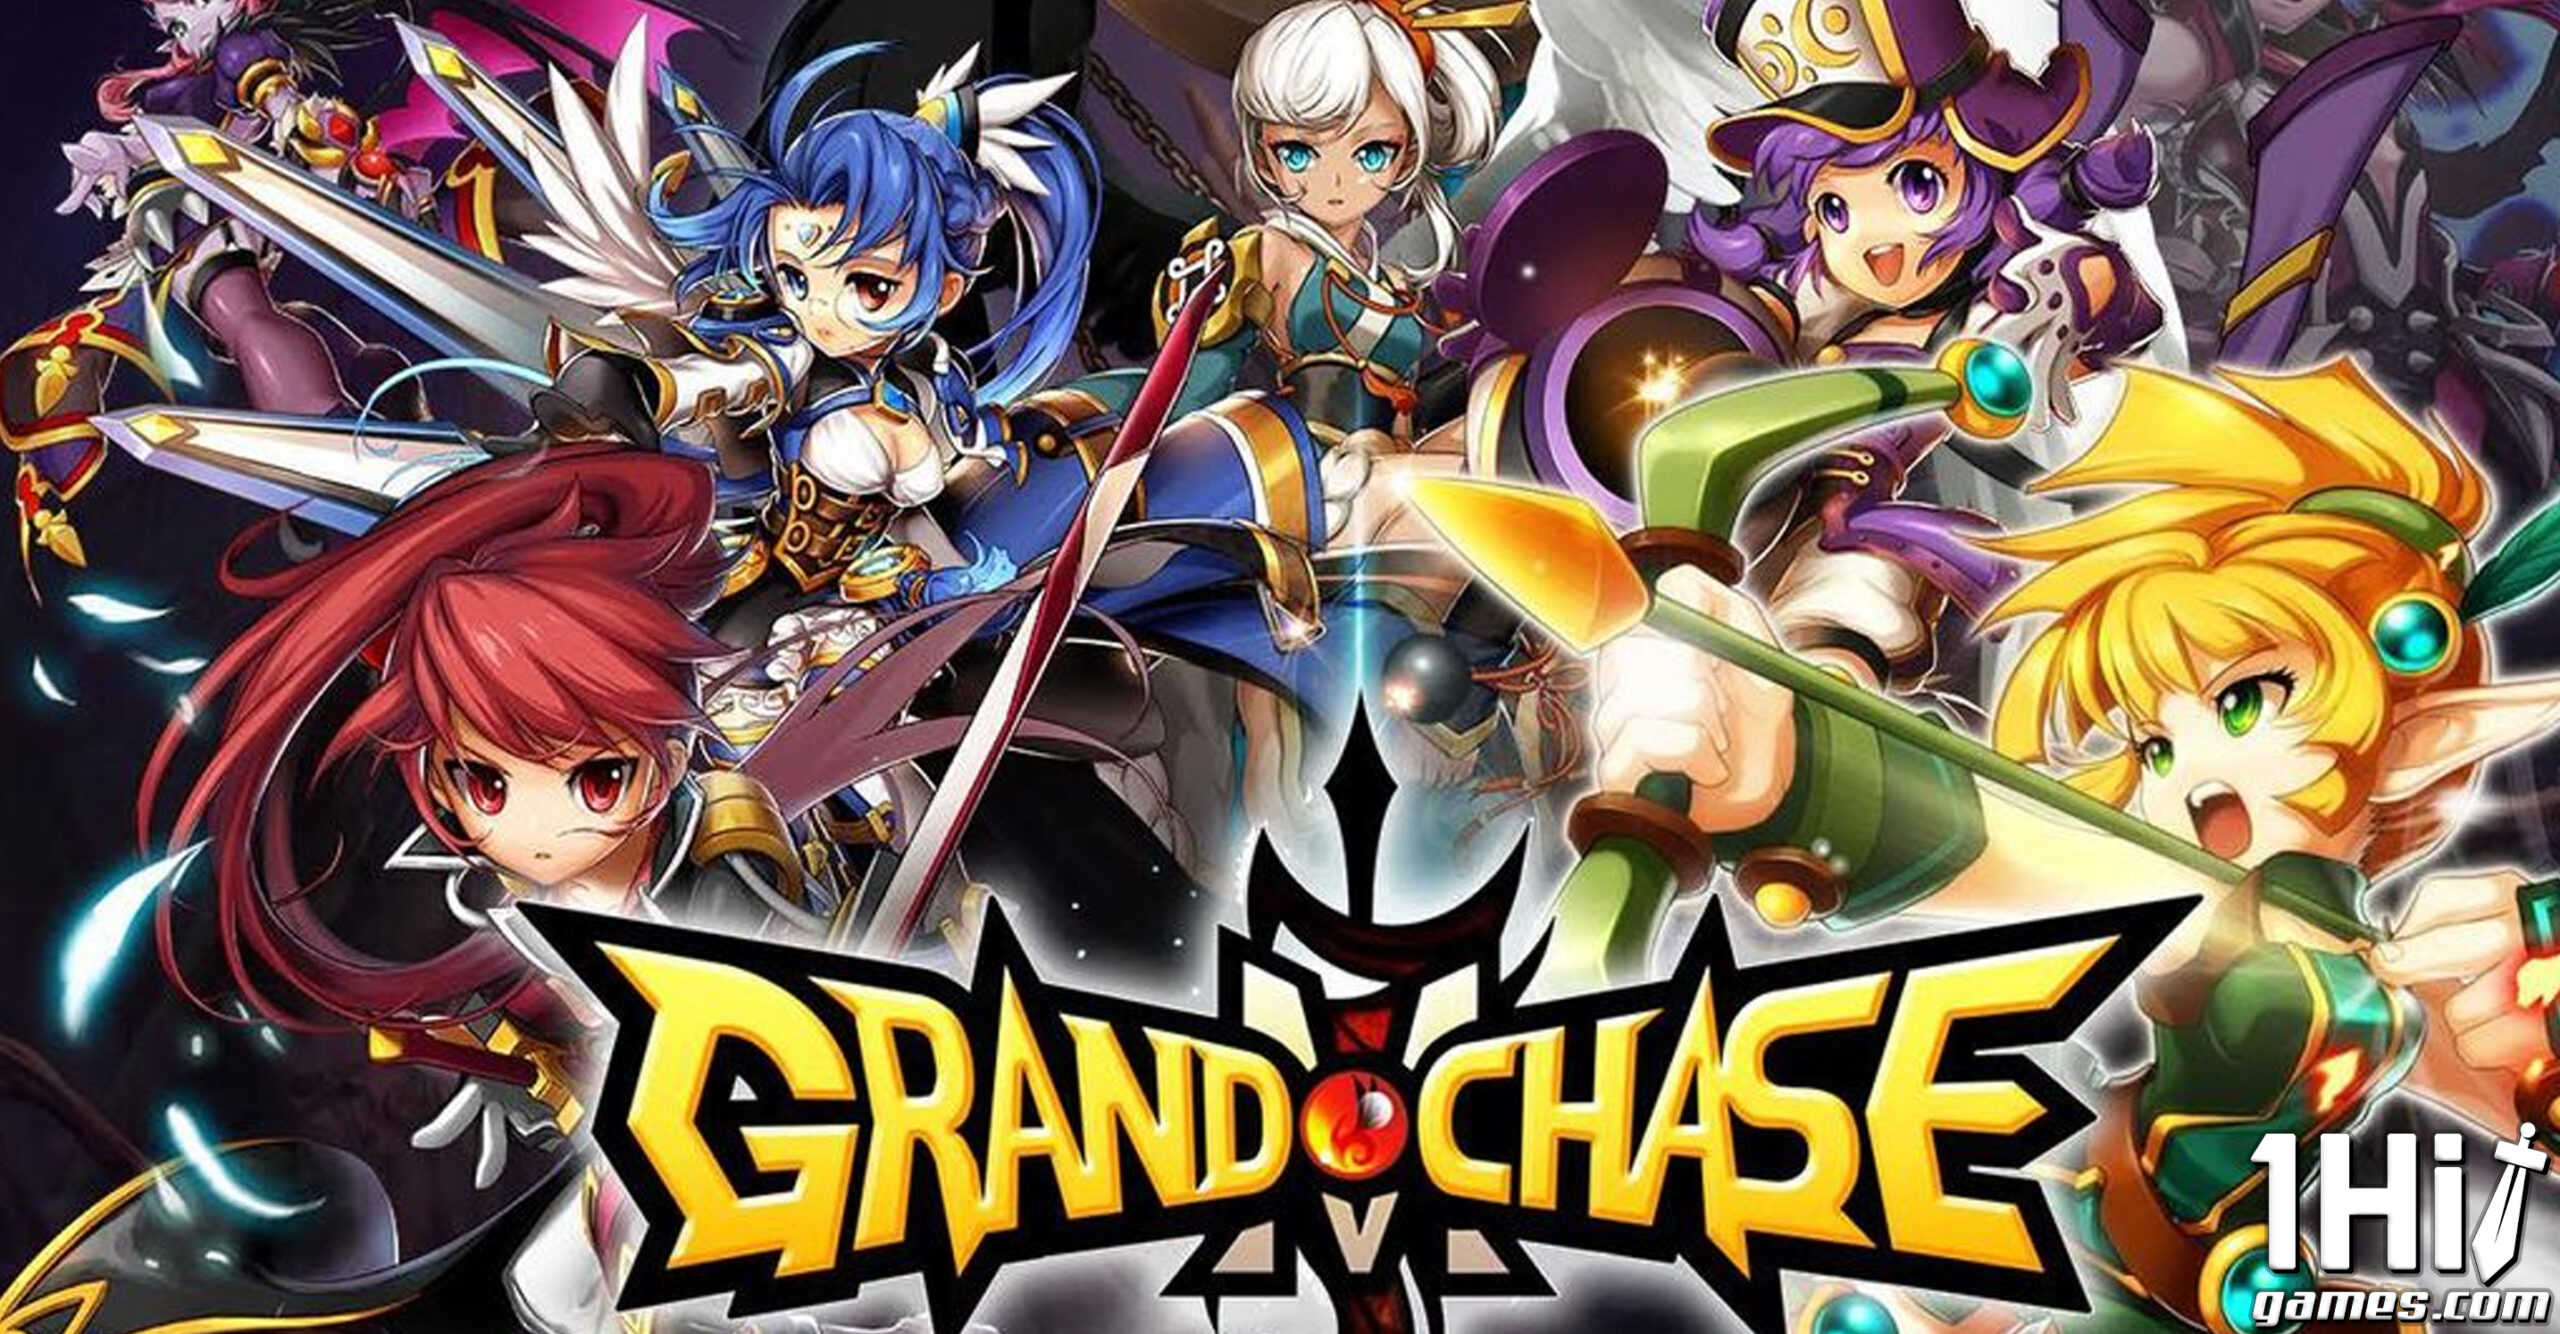 Grand Chase Classic na Steam em agosto